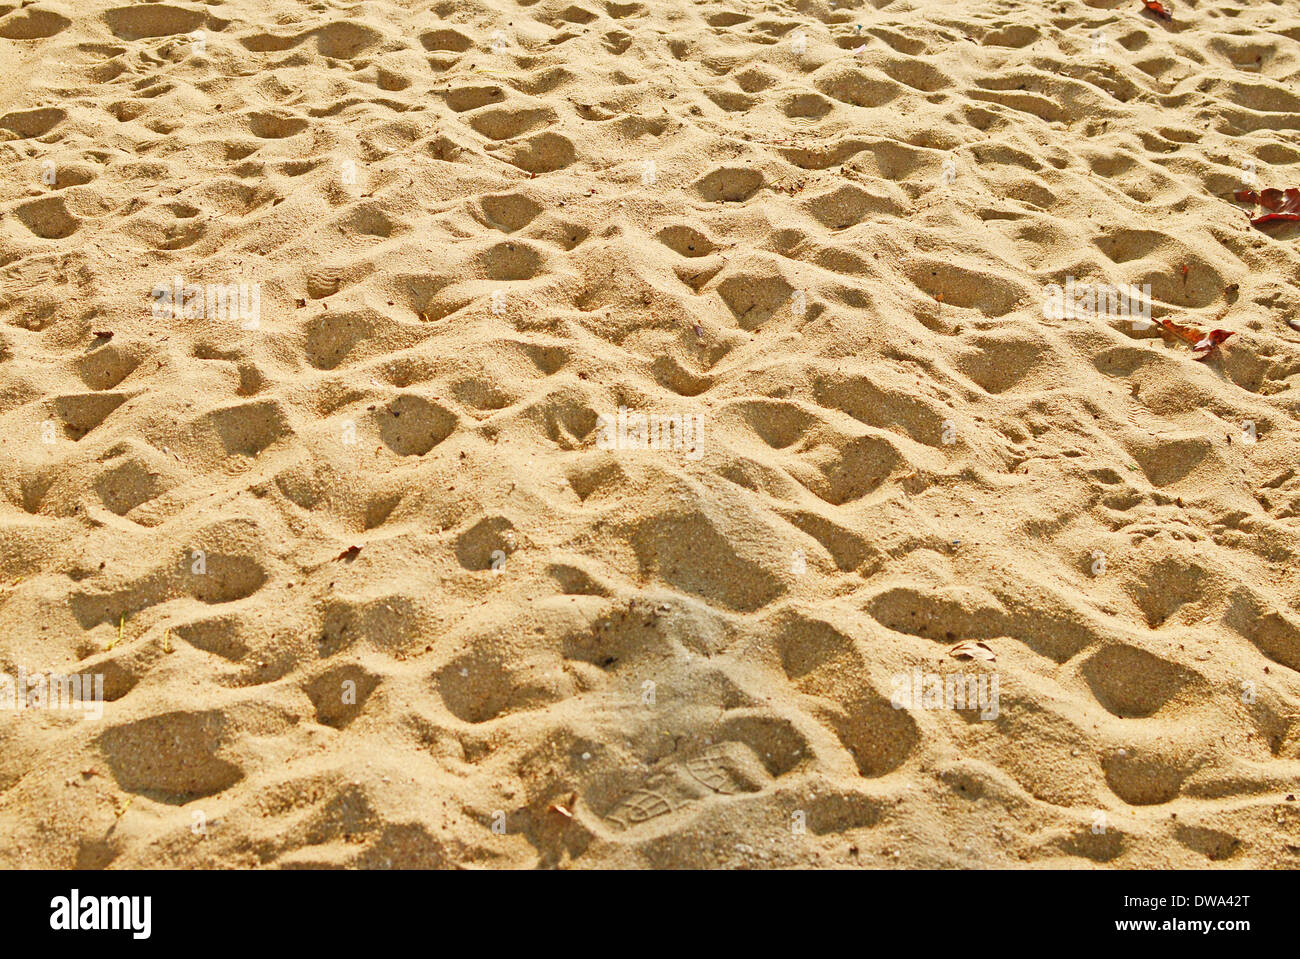 Fond de sable de beauté Banque D'Images